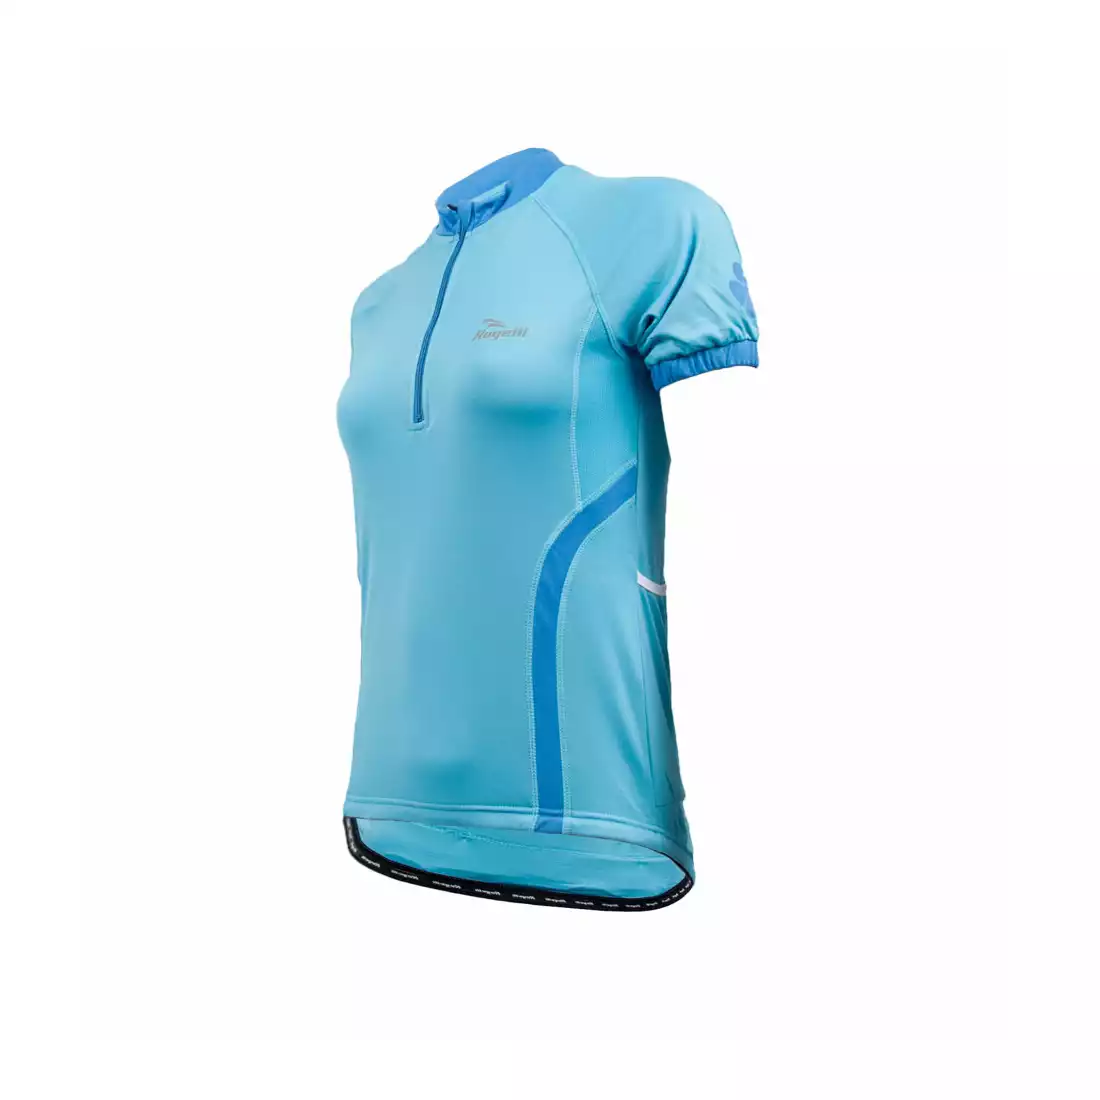 ROGELLI CANDY - damska koszulka rowerowa, kolor: Niebieski